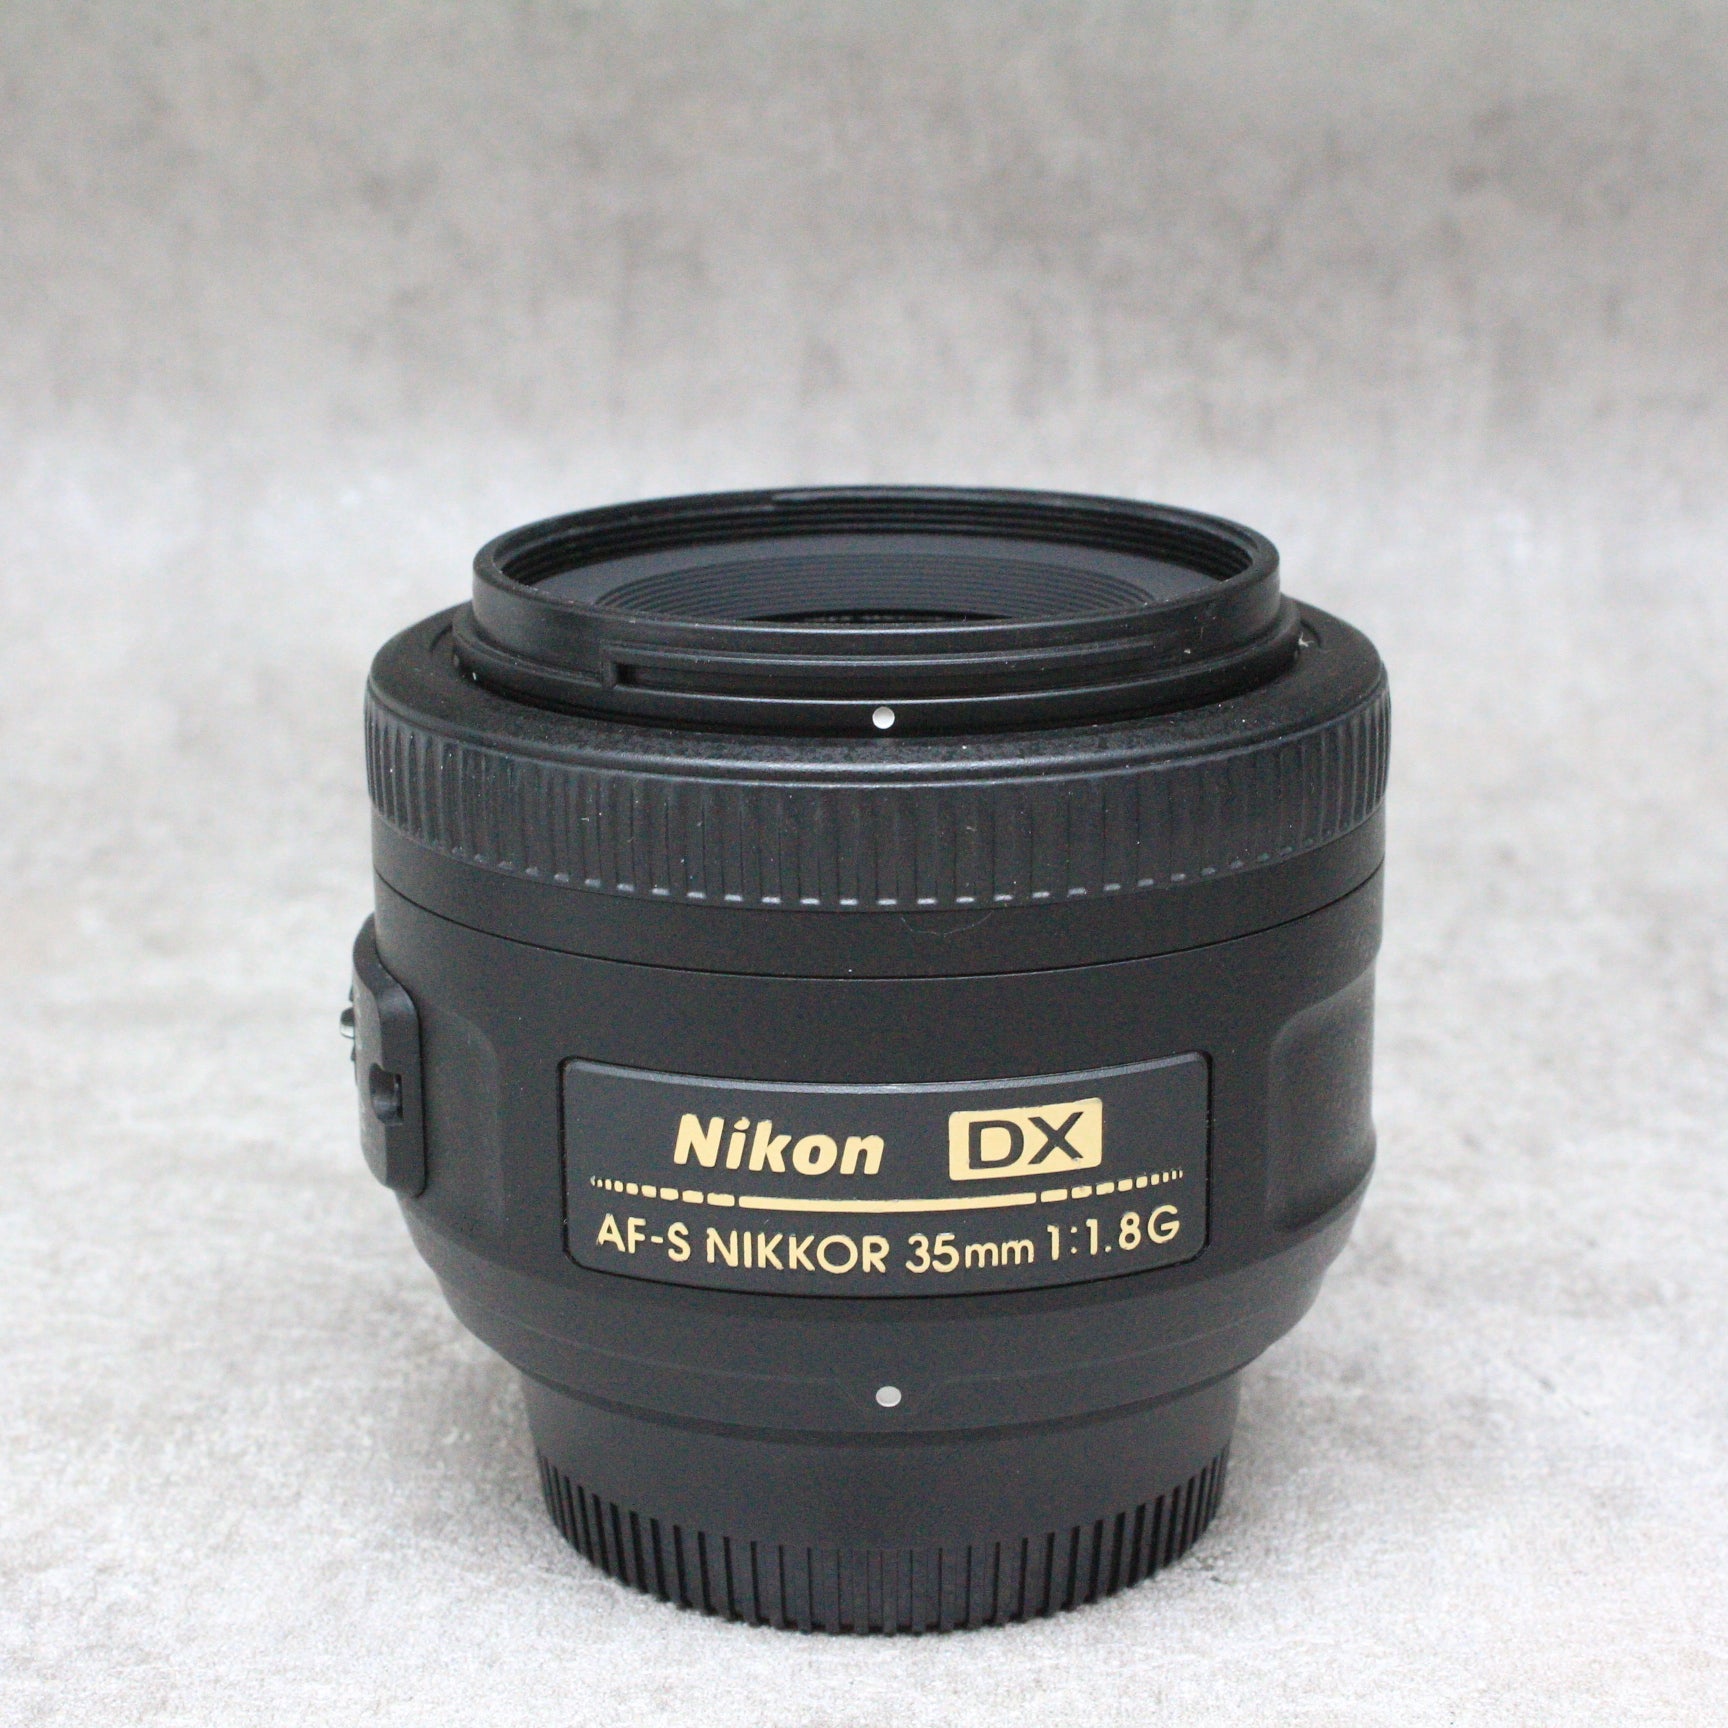 af-s dx nikkor 35mm f/1.8g